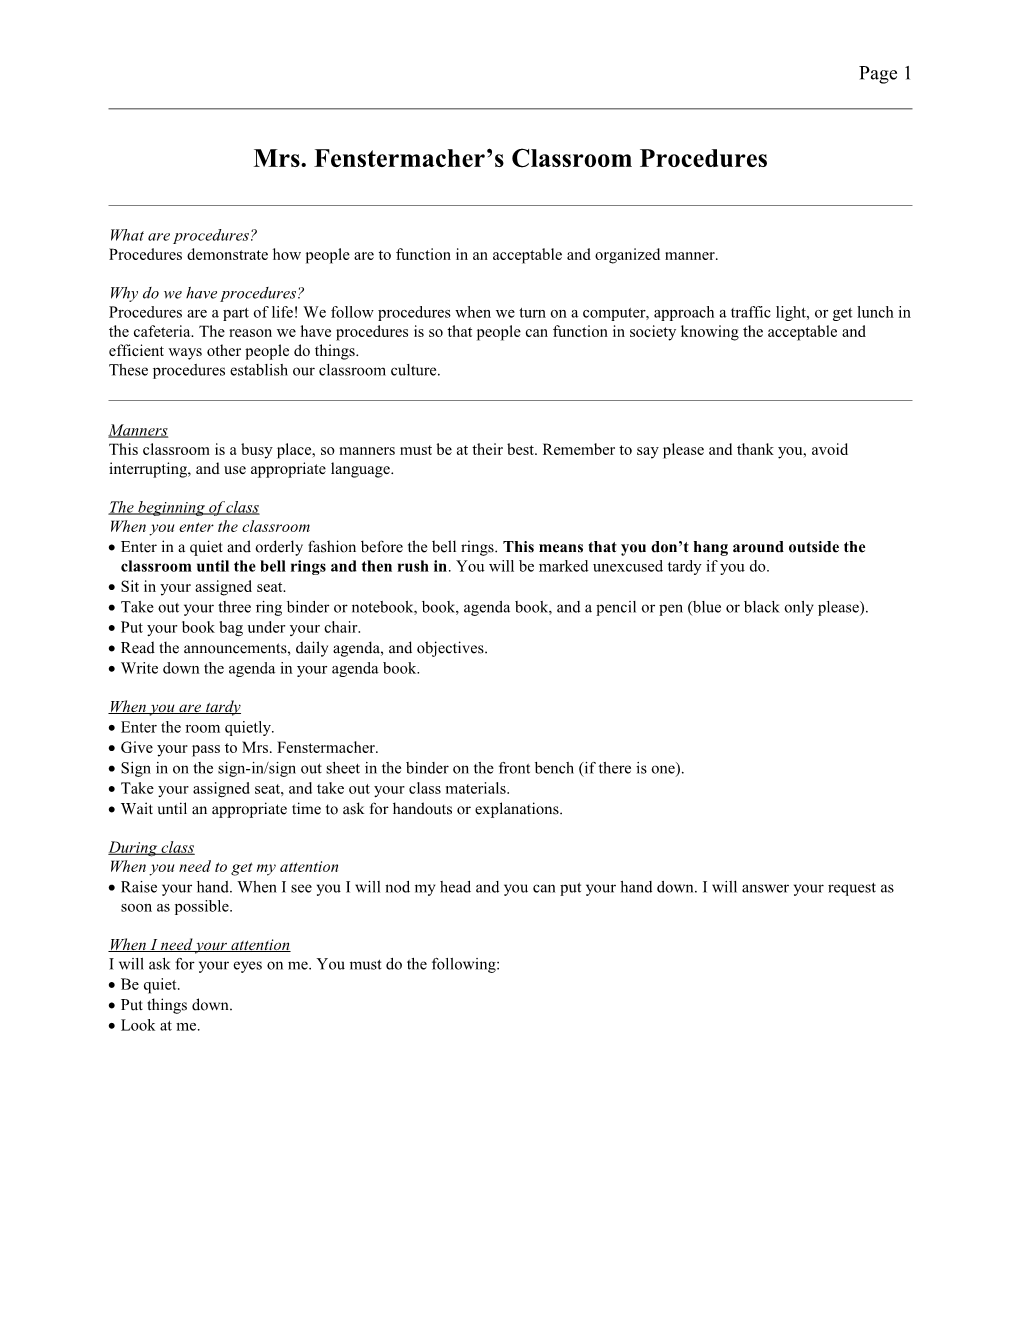 Mrs. Fenstermacher S Classroom Procedures